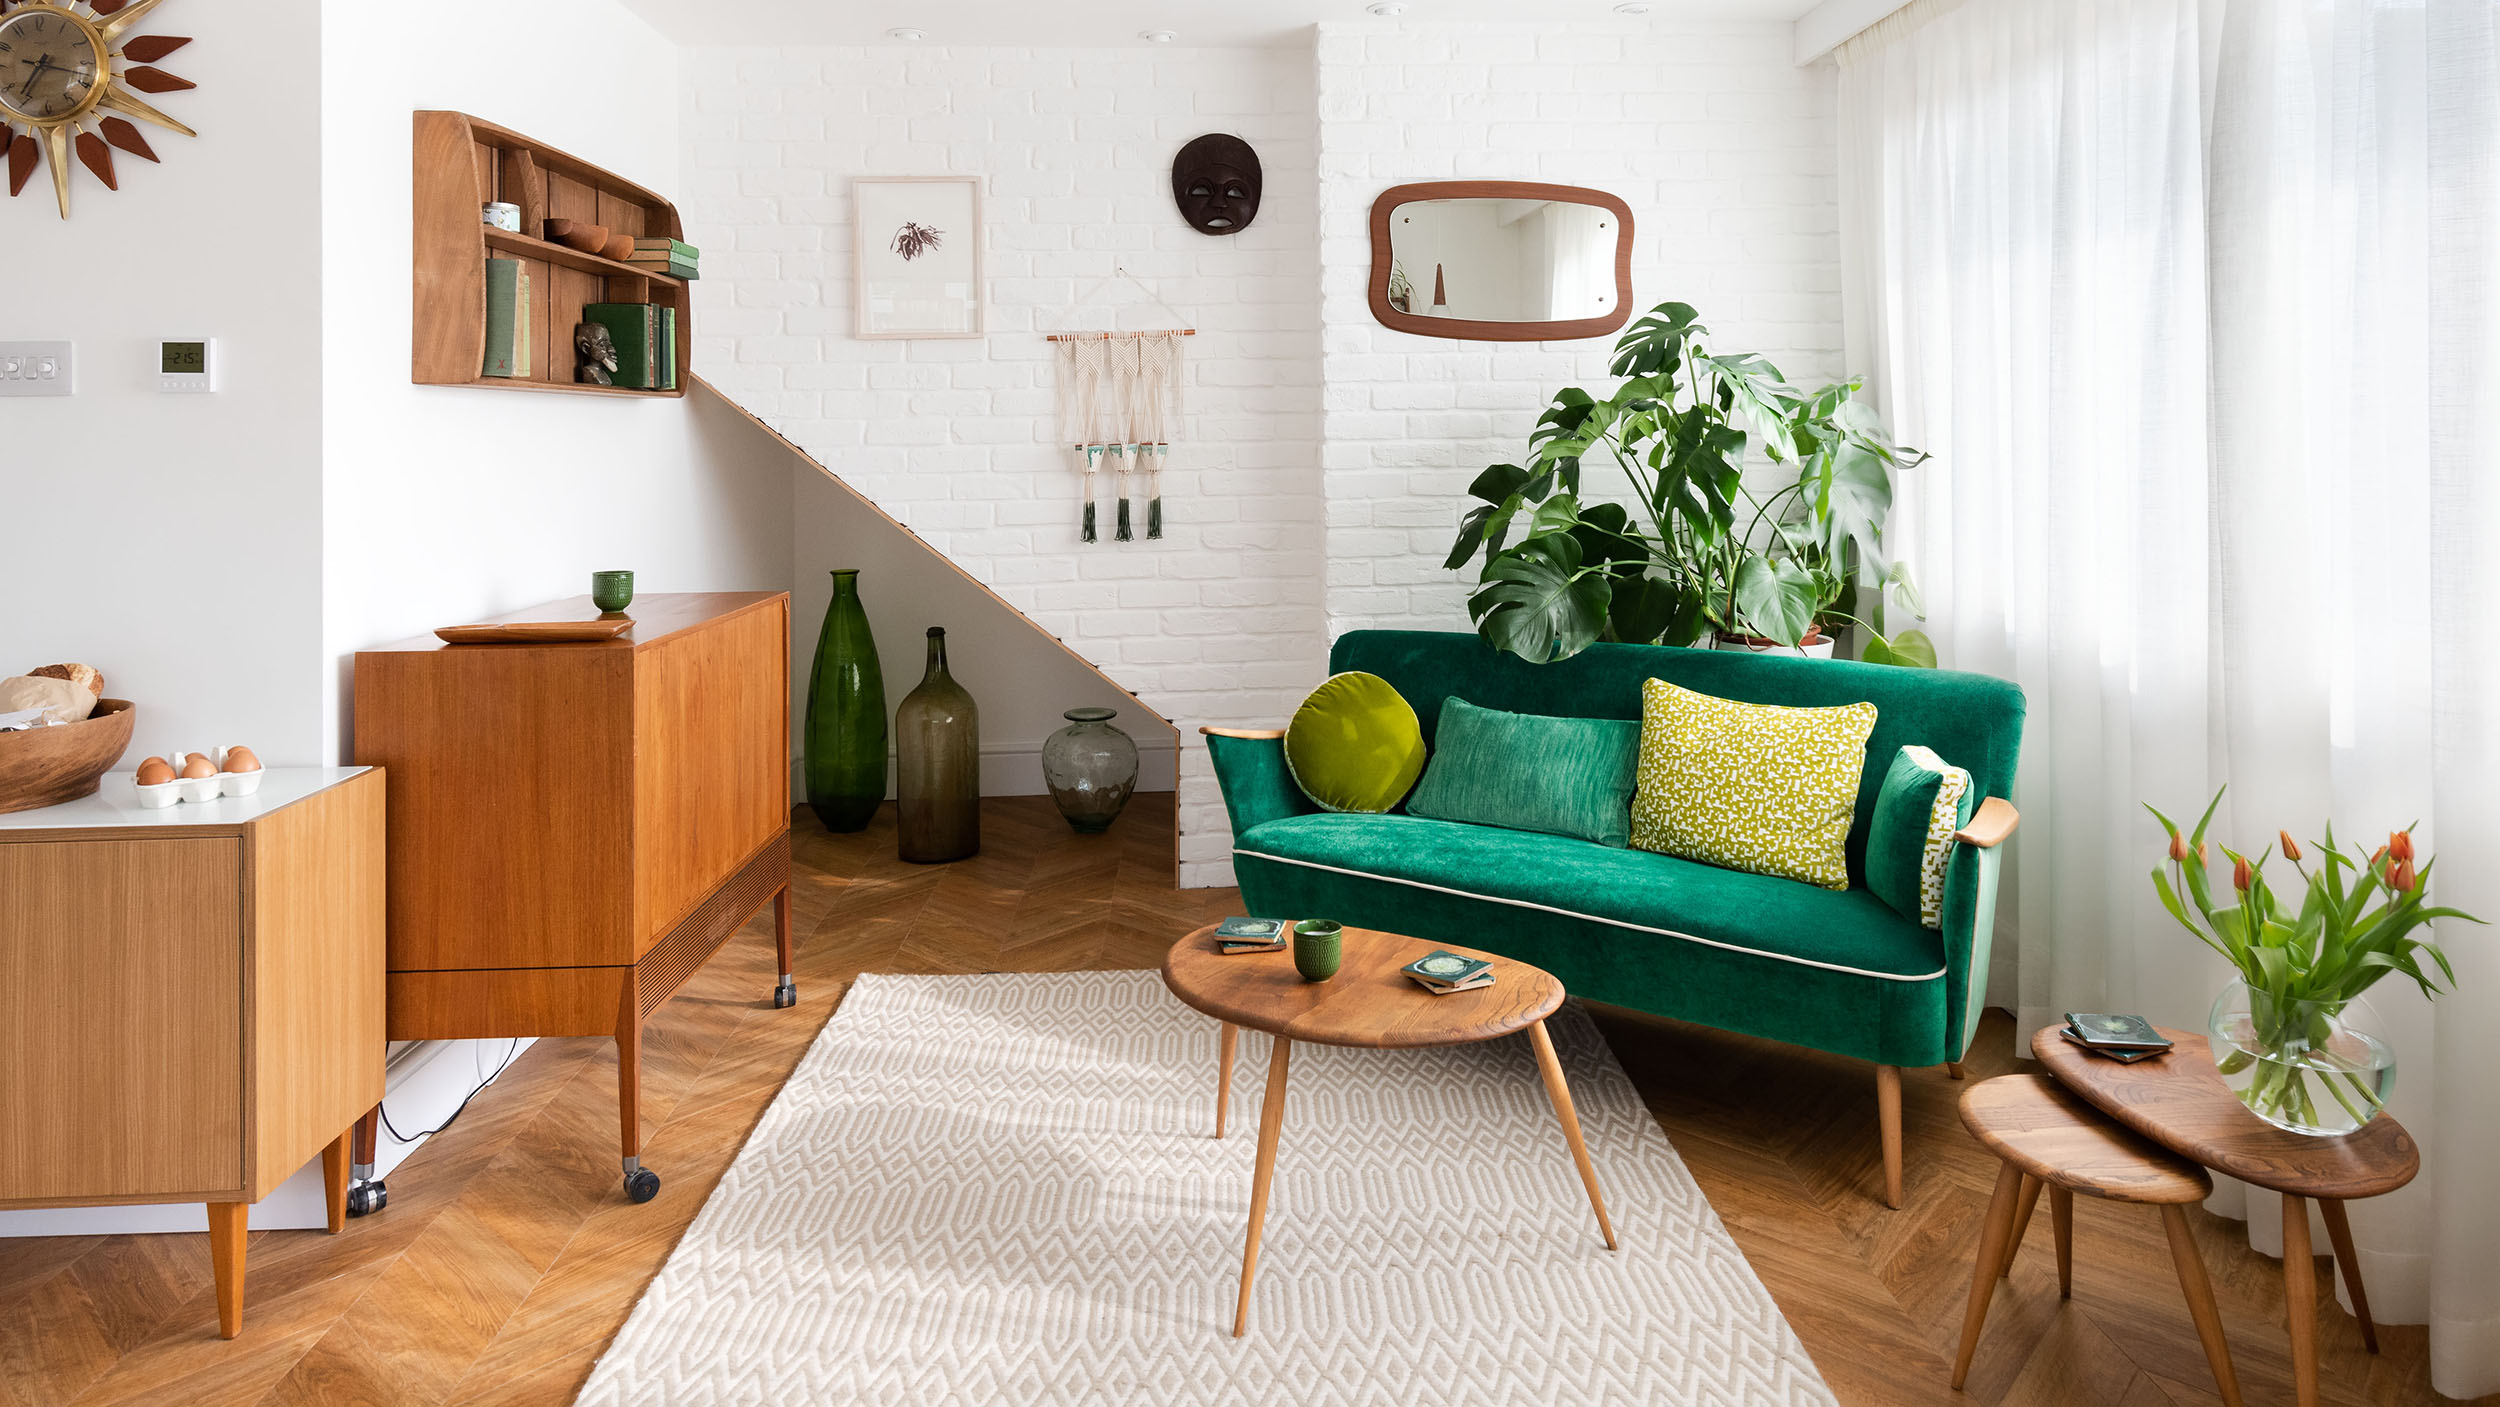 Green modernist interiors